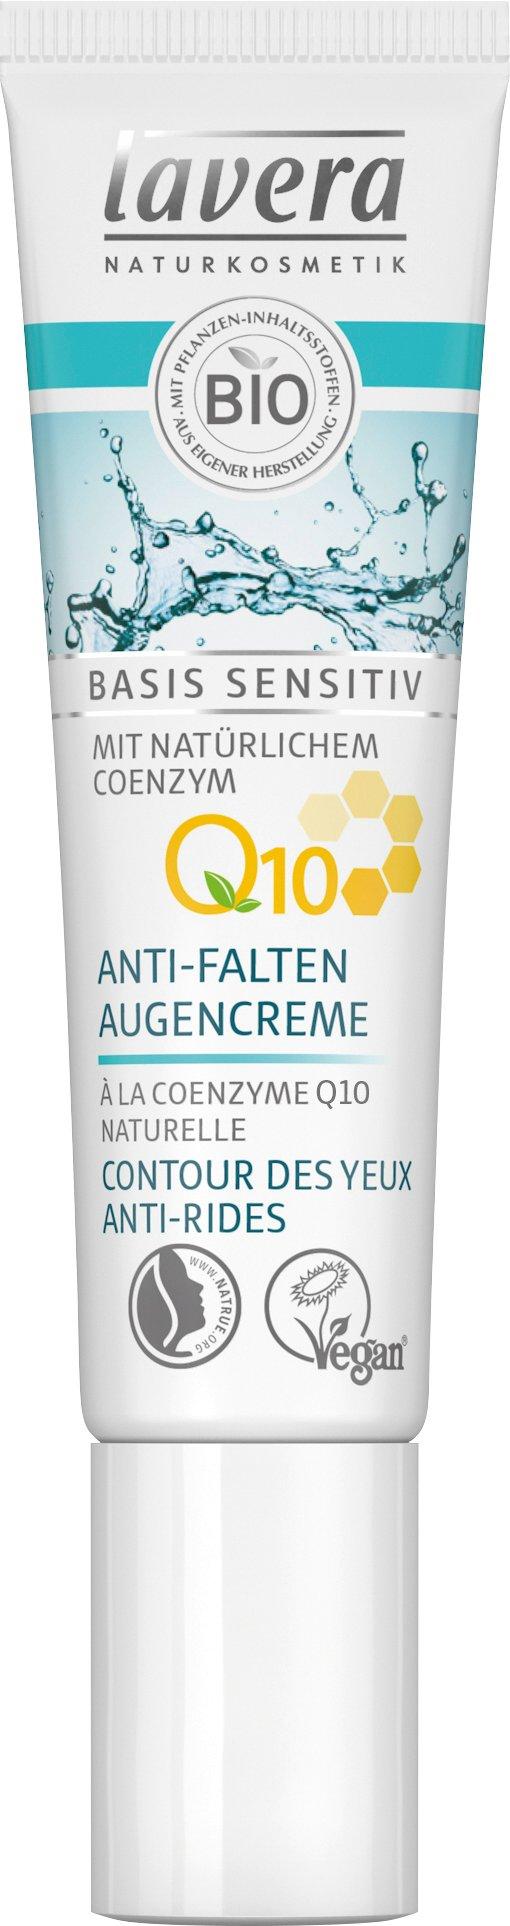 Image of lavera Anti-Falten Augencreme Q10 basis sensitiv - 15ml